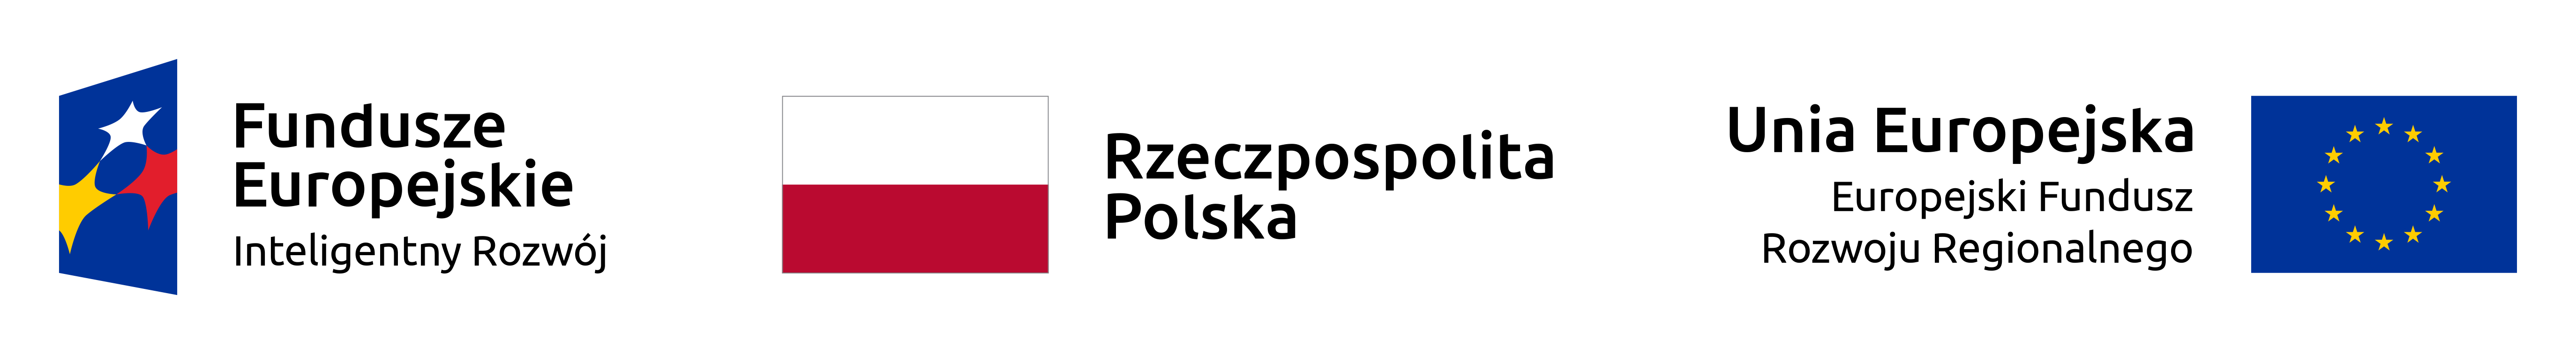 Fundusze Europejskie, Rzeczpospolita Polska, UE - logotypy